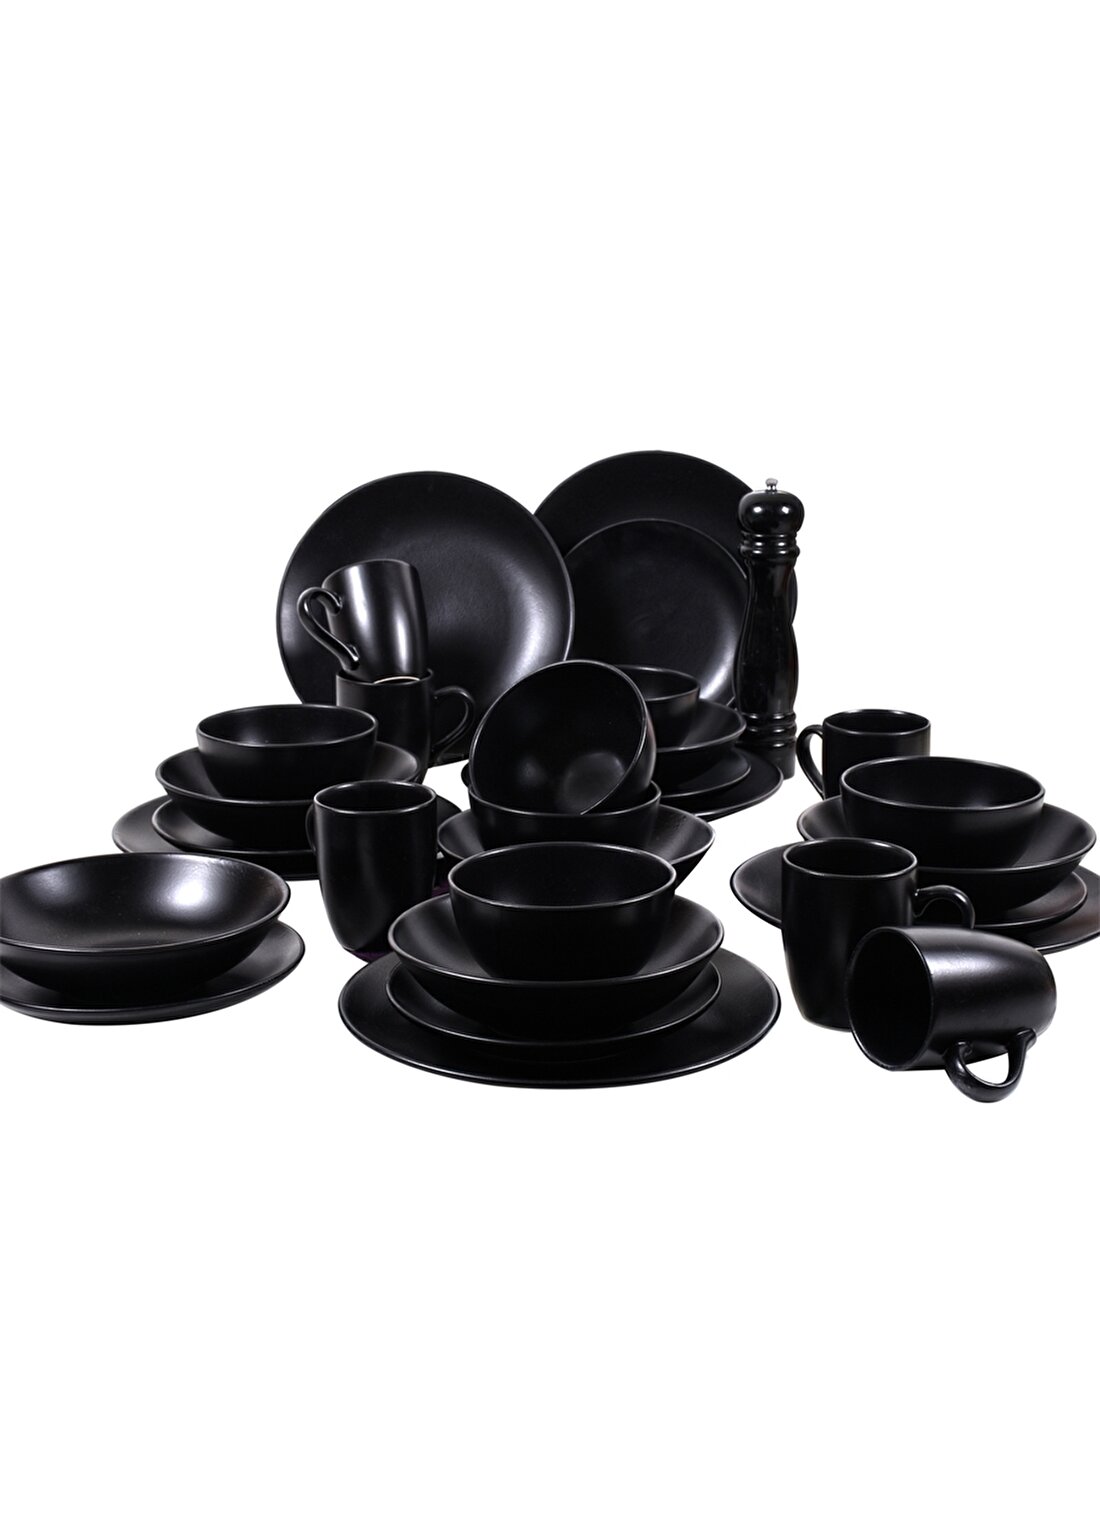 Keramika Alfa Mat Siyah 30 Parça 6 Kişilik Yemek Takımı